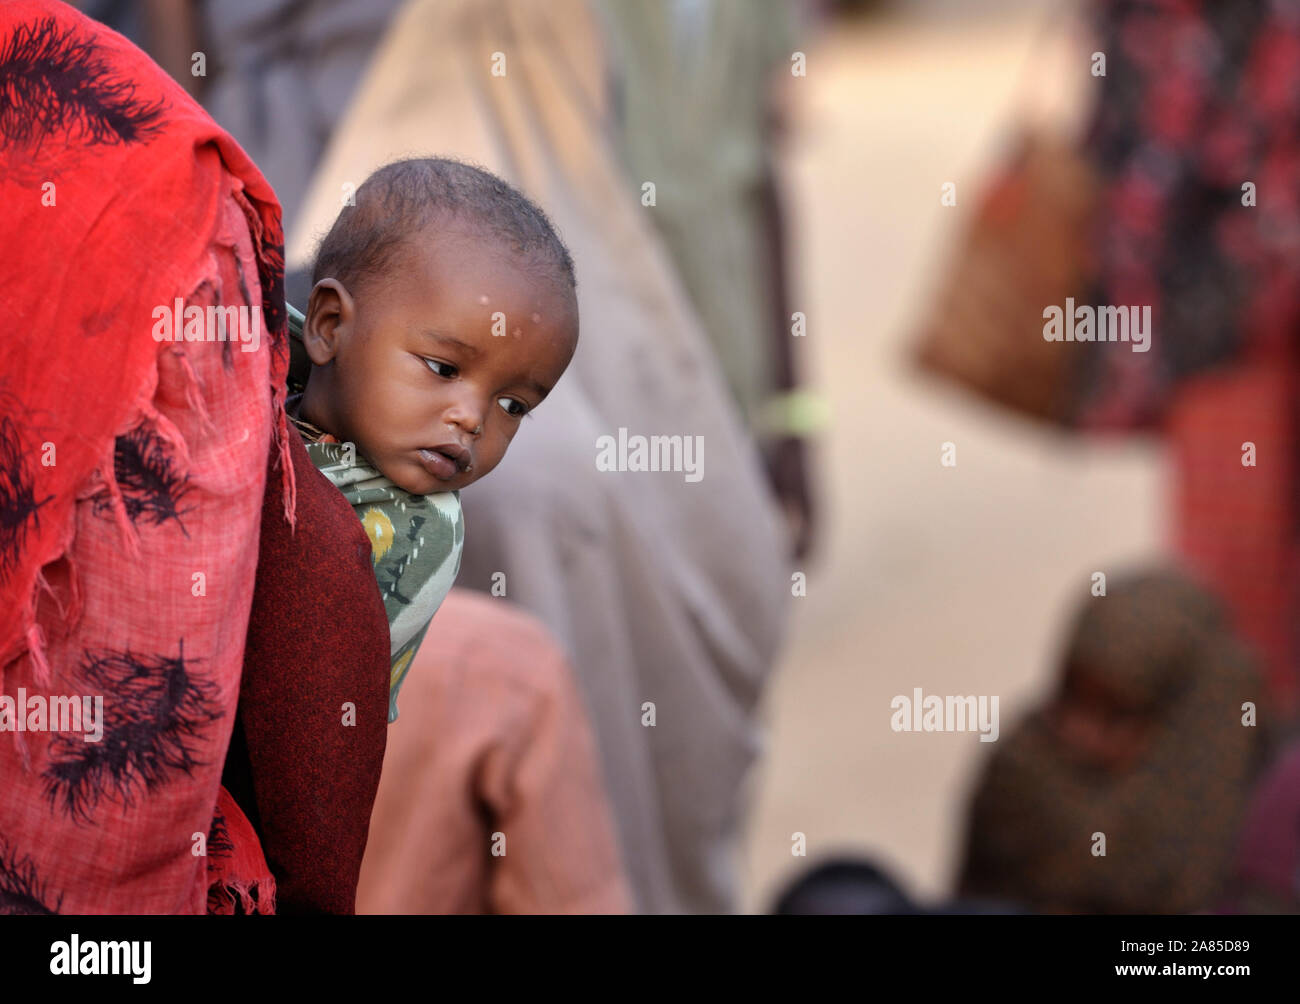 Un enfant somalien nouvellement arrivés dans le monde des sondages à partir de sa mère est de retour lors de l'attente dans le centre d'accueil du camp de réfugiés de Dagahaley au Kenya. Banque D'Images